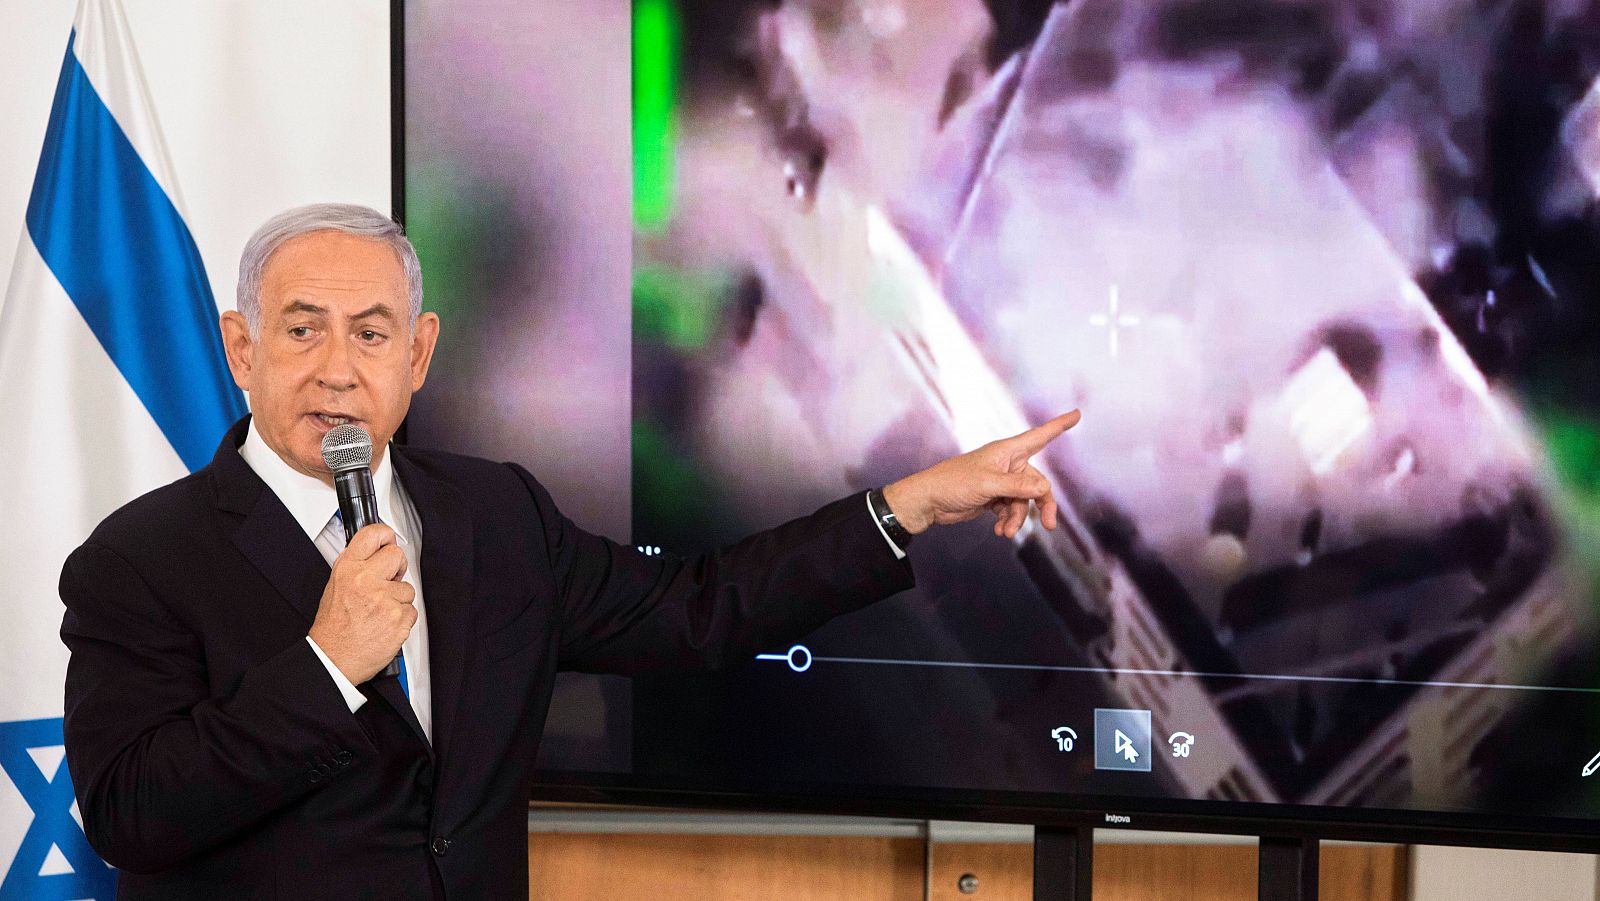 14 horas - Netanyahu podría salir reforzado políticamente tras la ofensiva en Gaza - Escuchar ahora